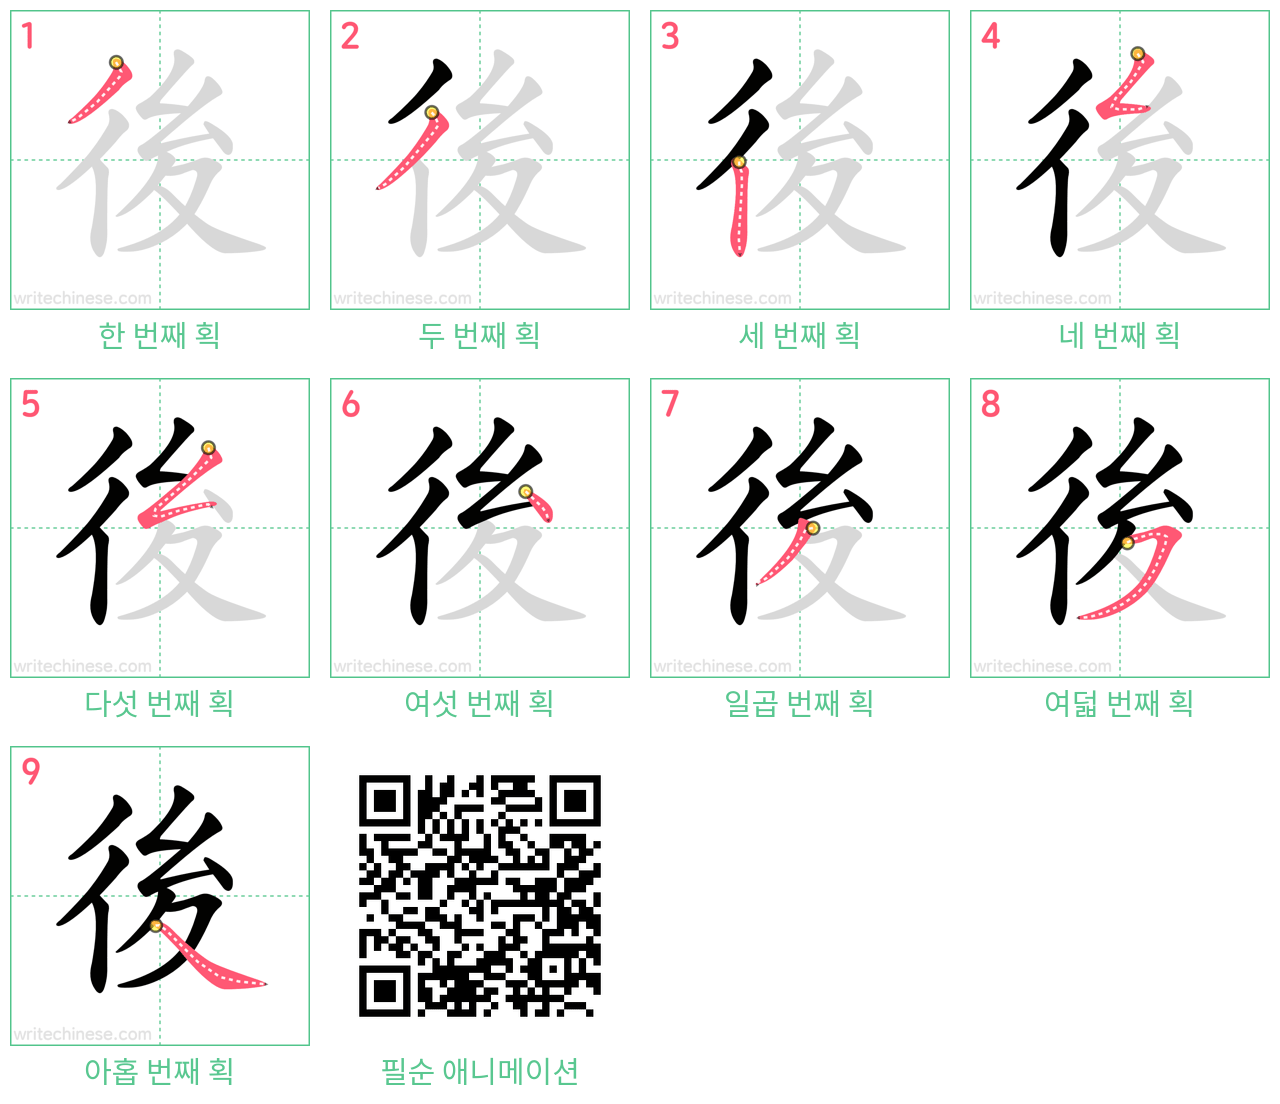 後 step-by-step stroke order diagrams